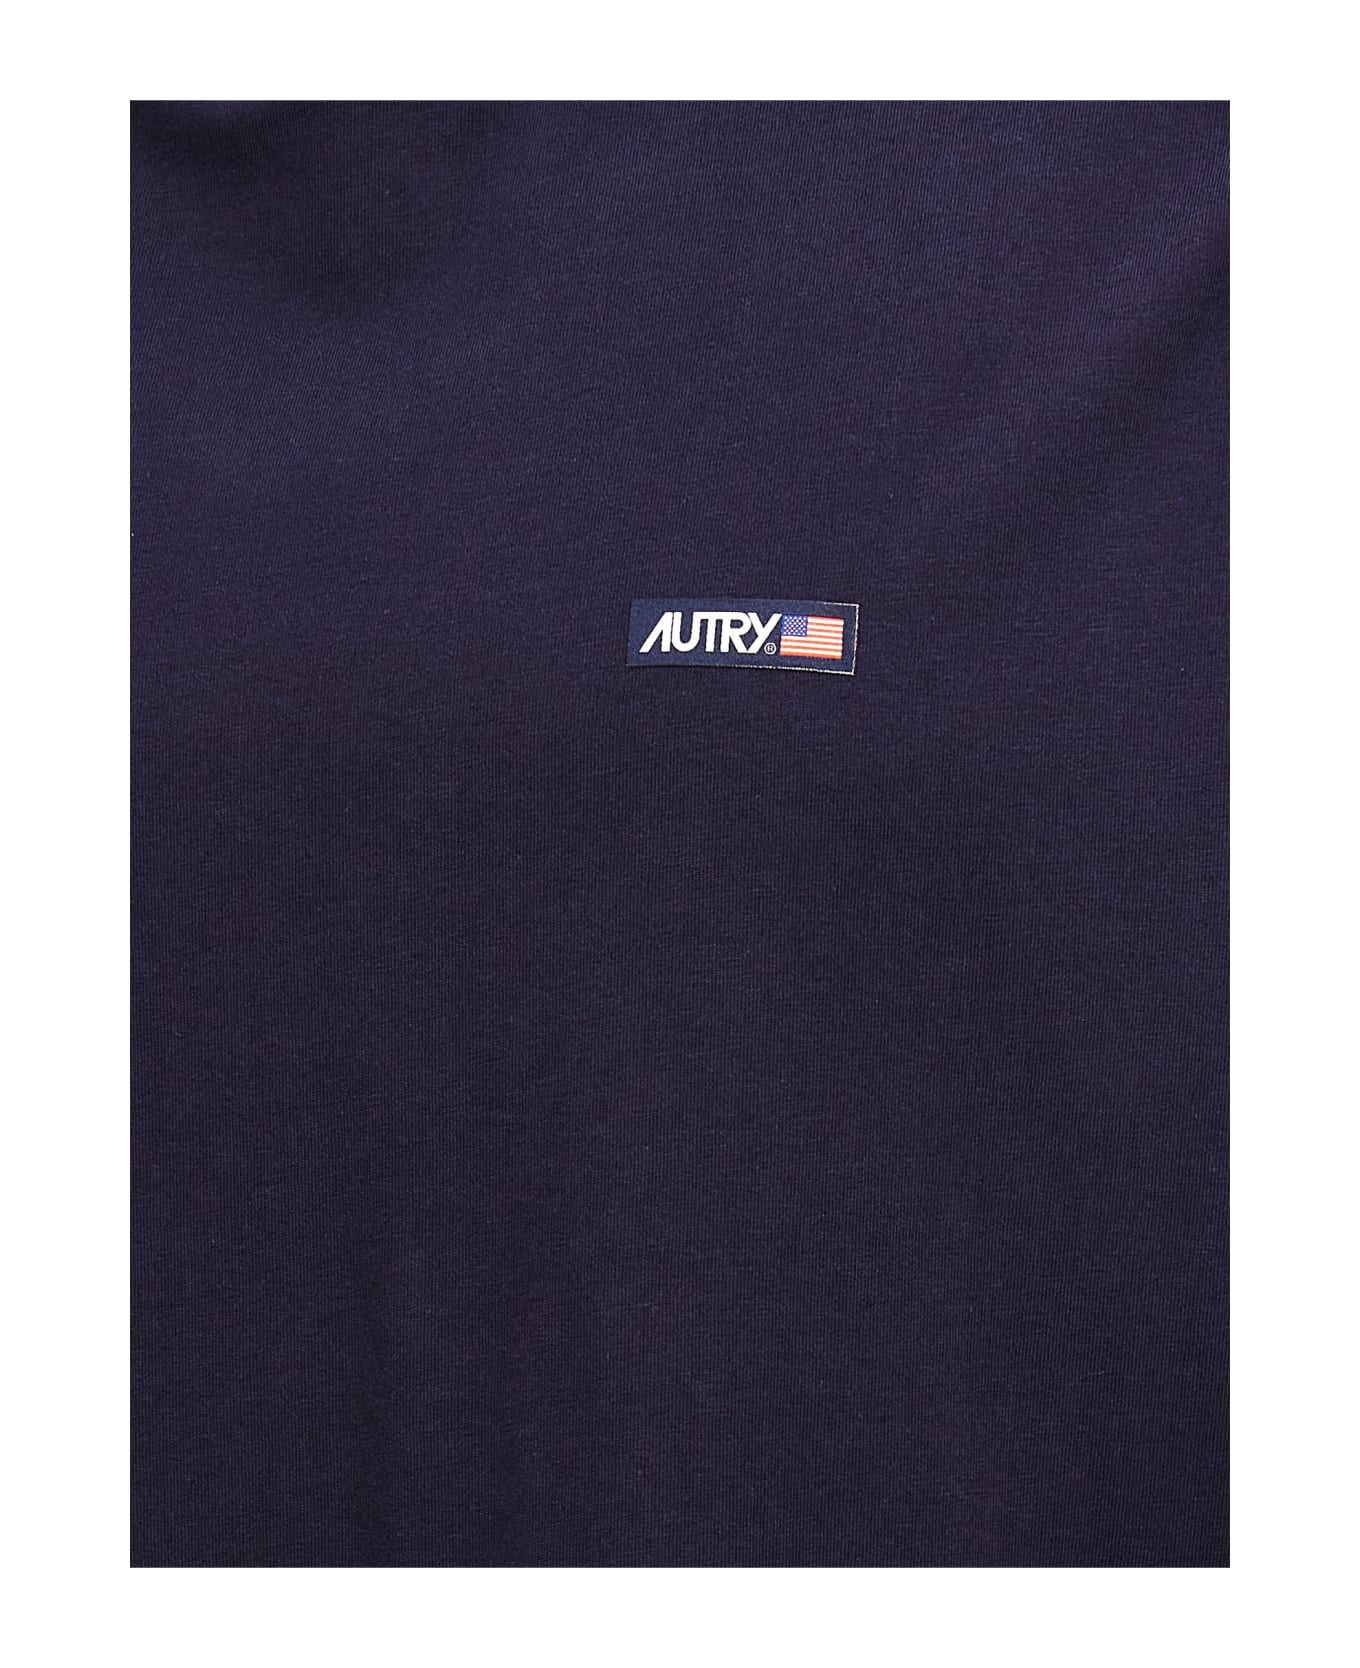 Autry Logo Patch T-shirt - Blue シャツ